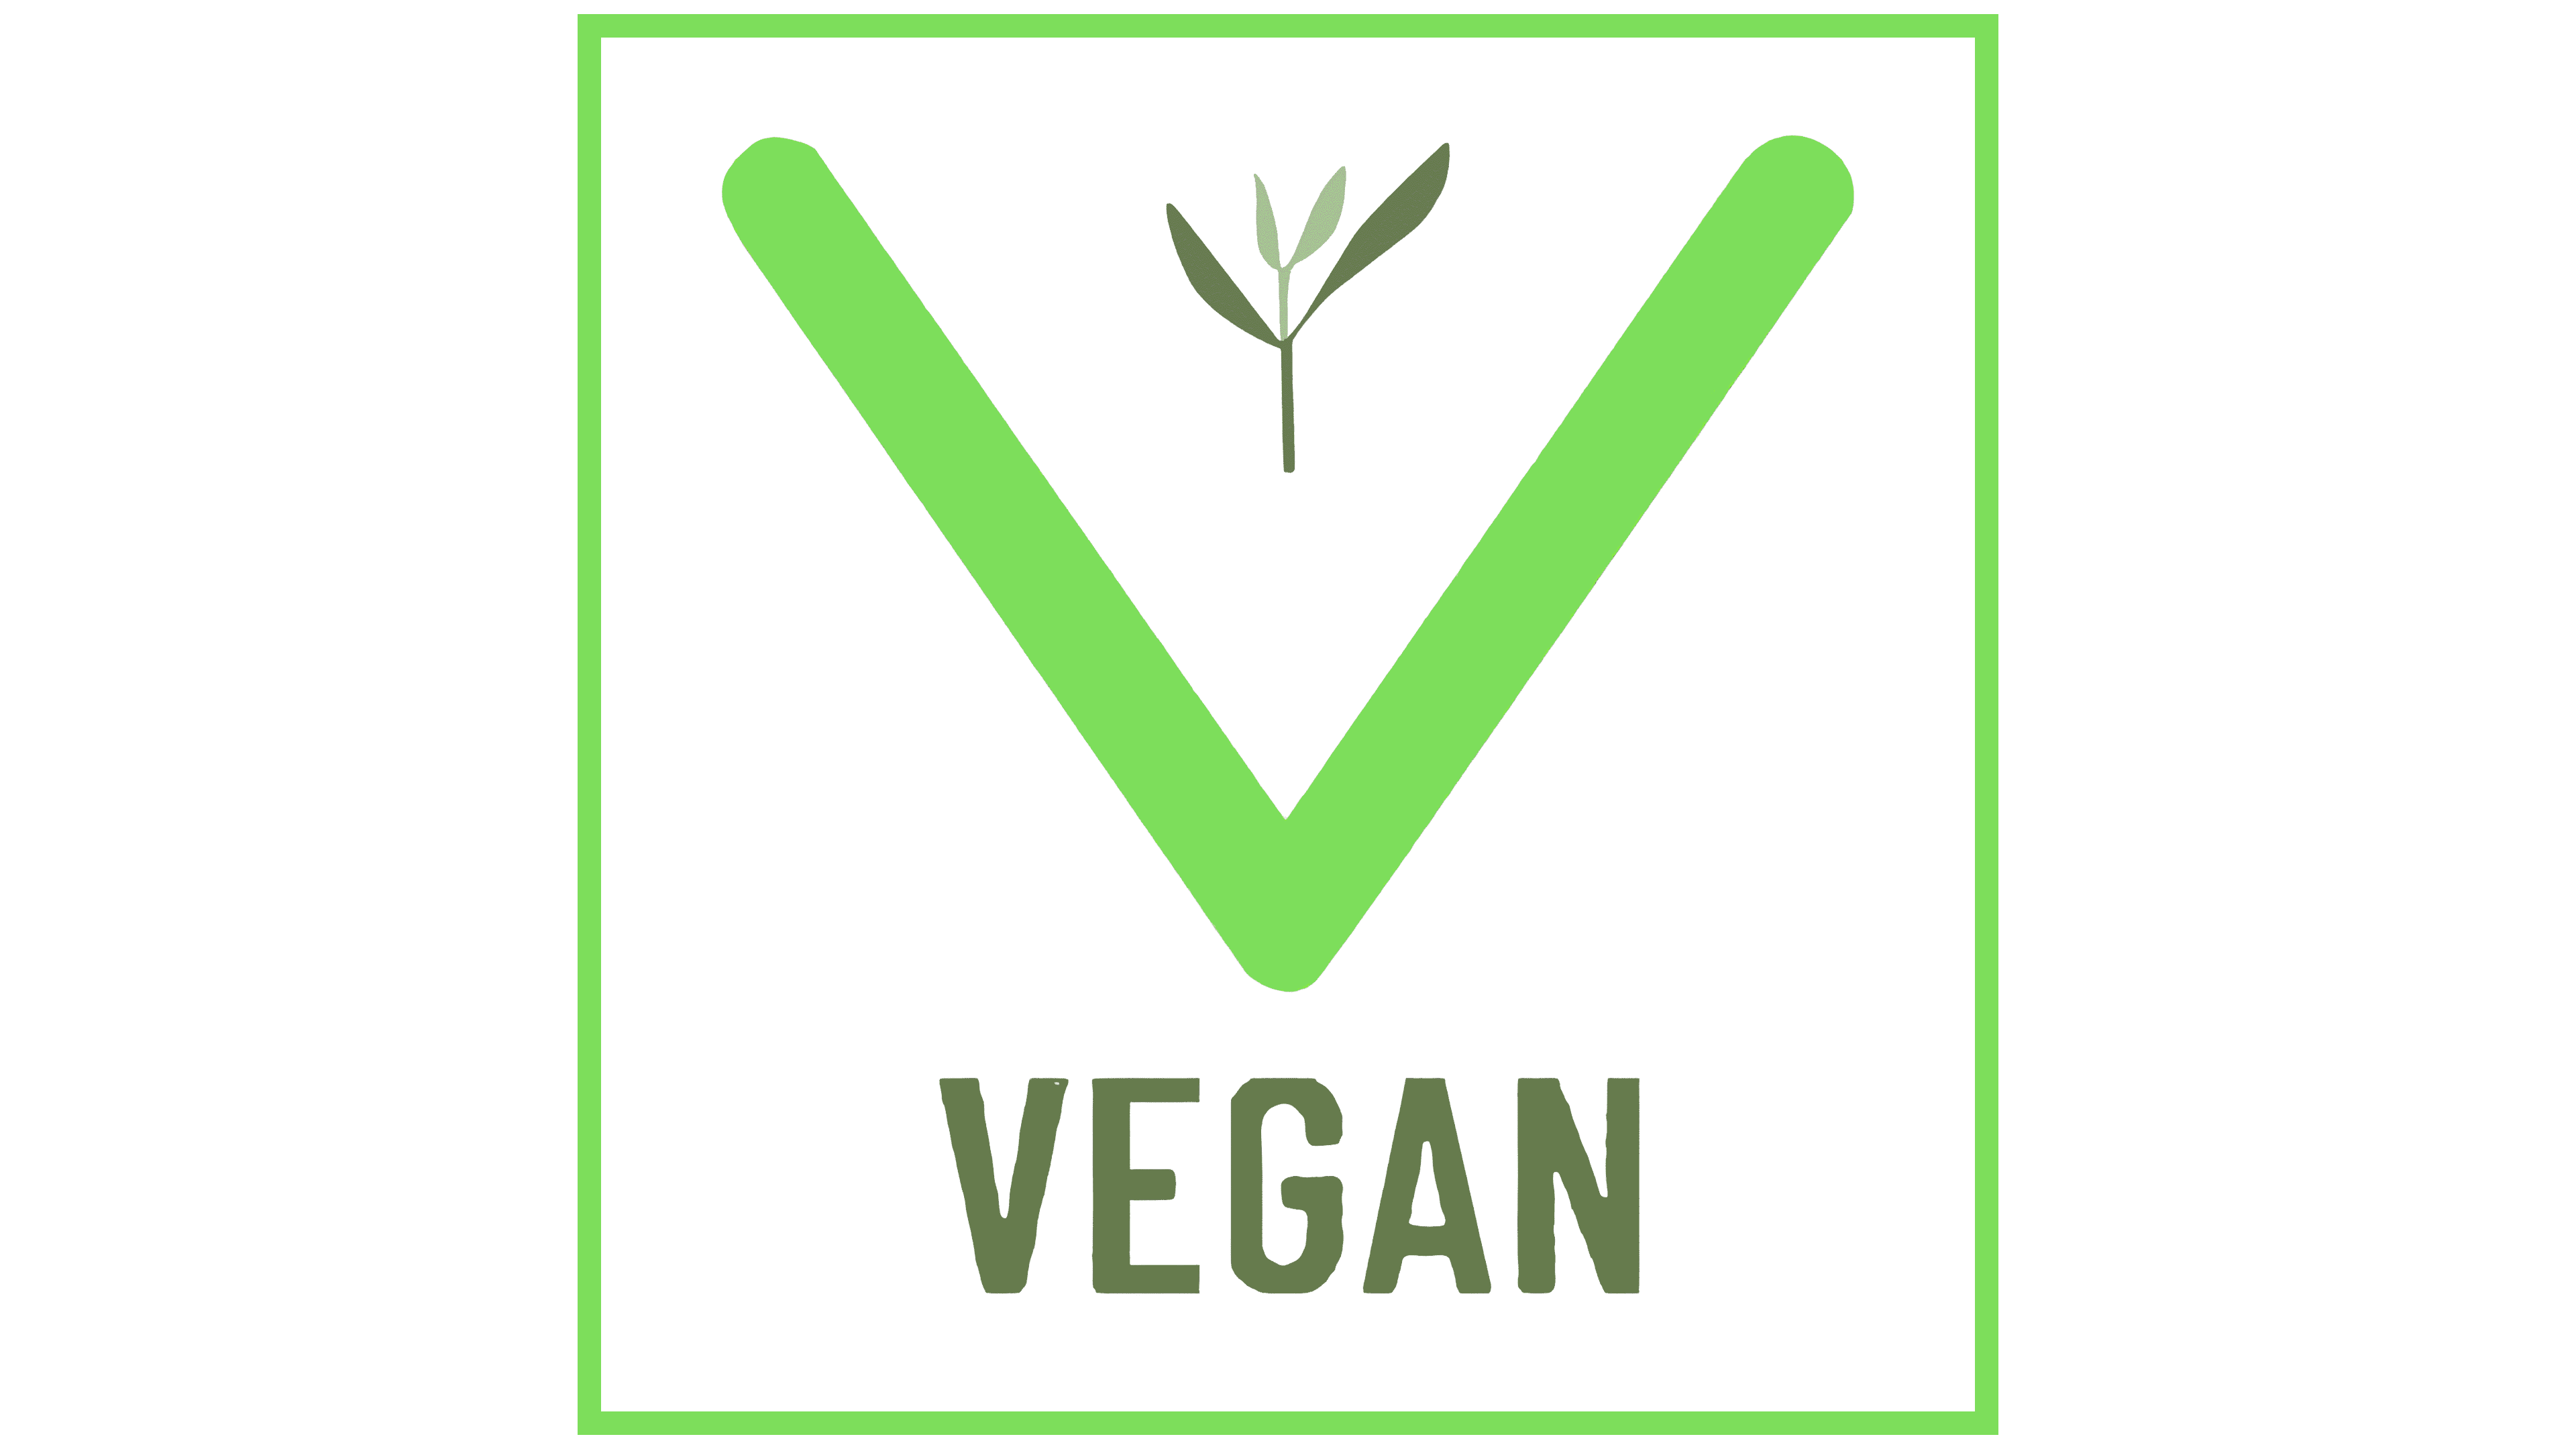 Download Cuisine Veganism Food Vegetarian Creative Carrot Logo HQ PNG Image  | FreePNGImg